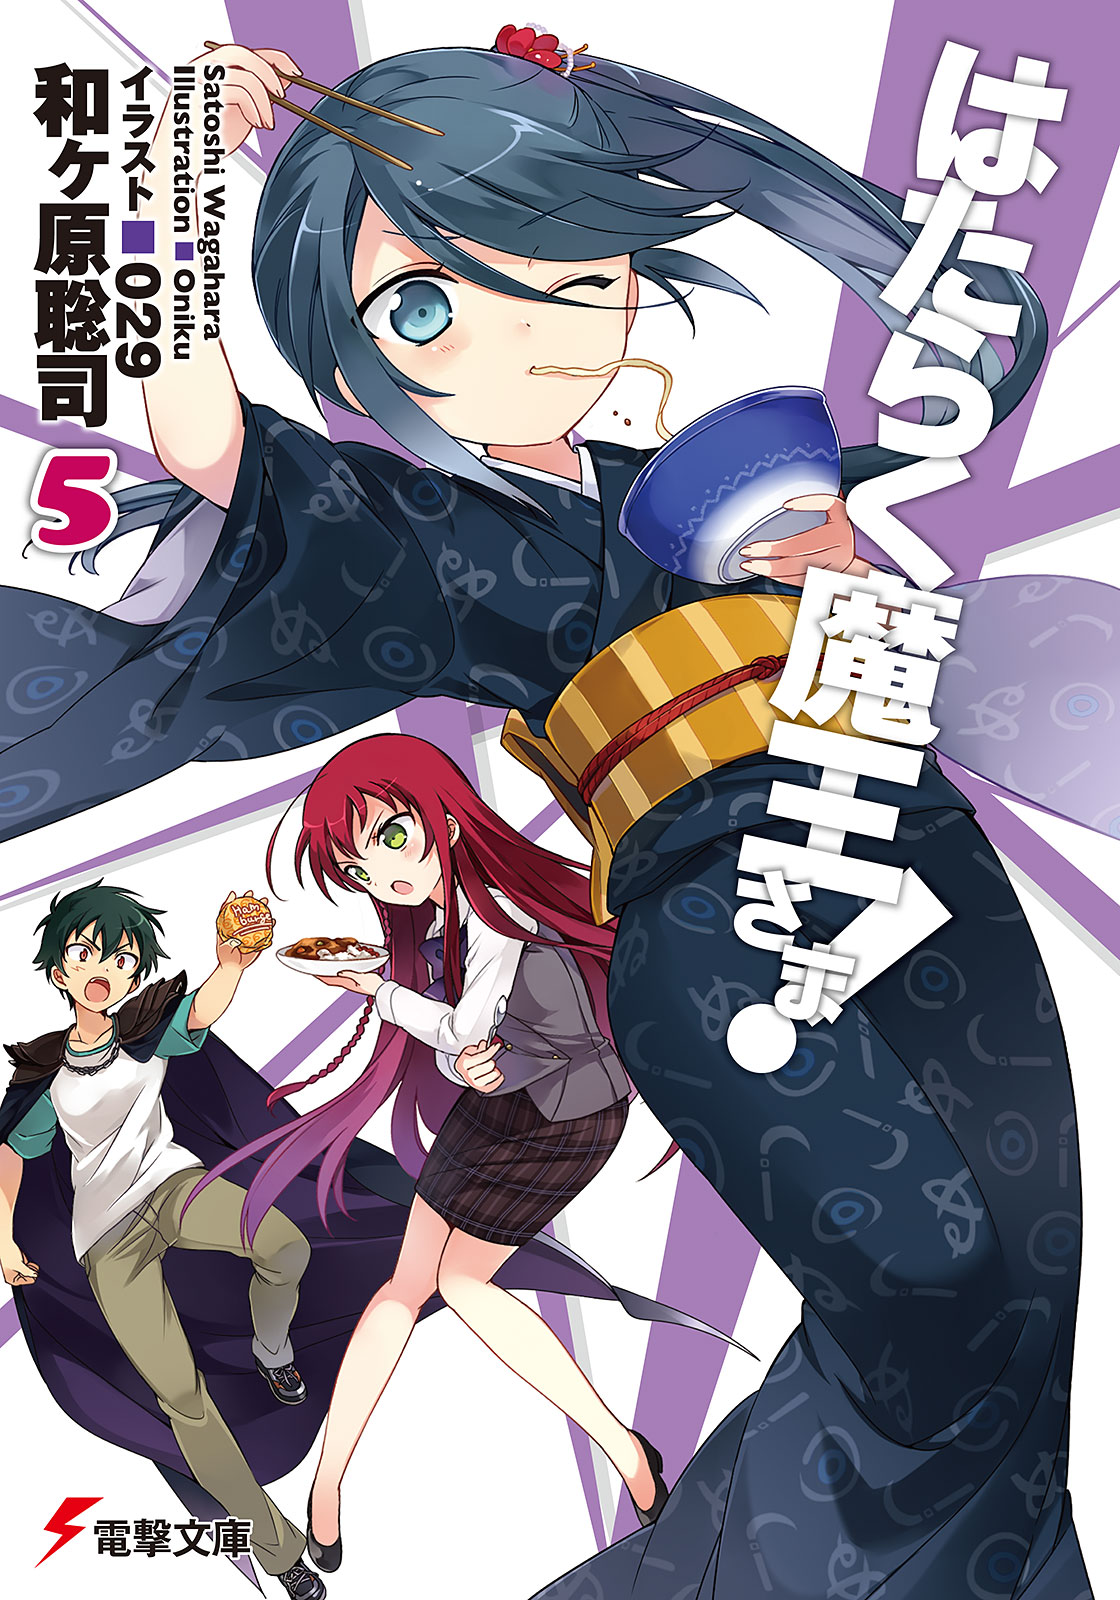 Light Novel Volume 2, Hataraku Maou-sama! Wiki